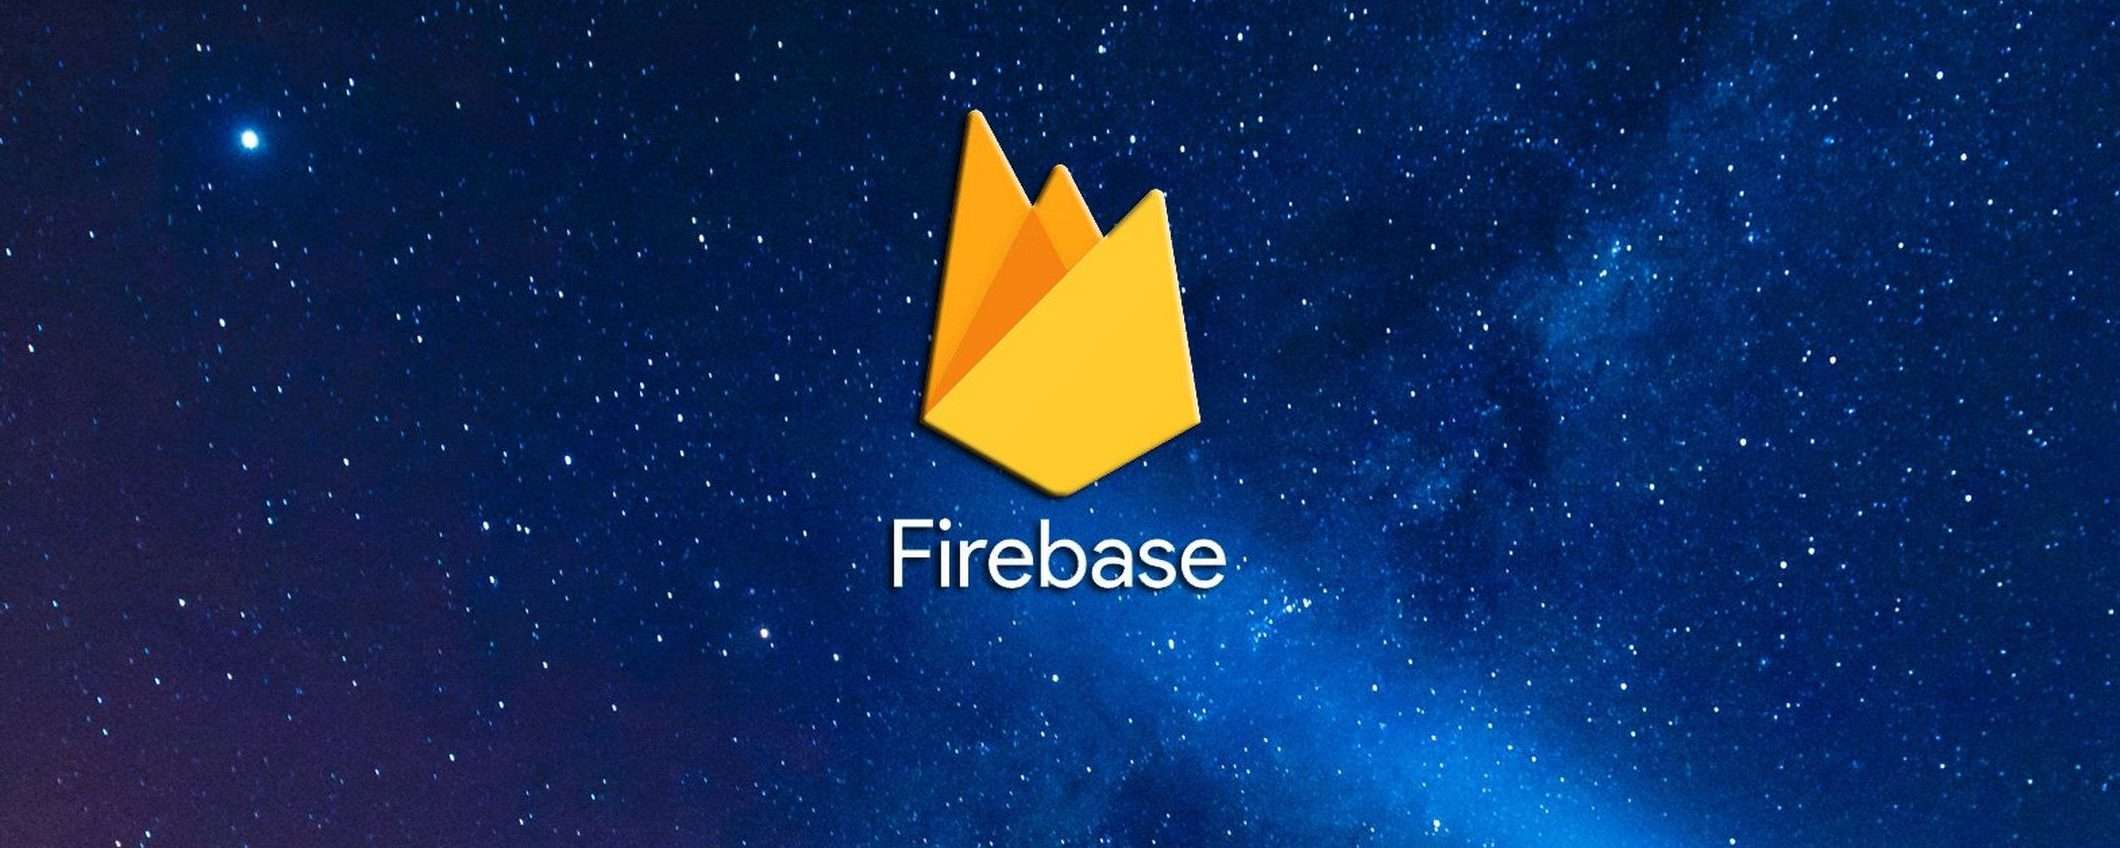 Google Firebase: 20 milioni di password in chiaro